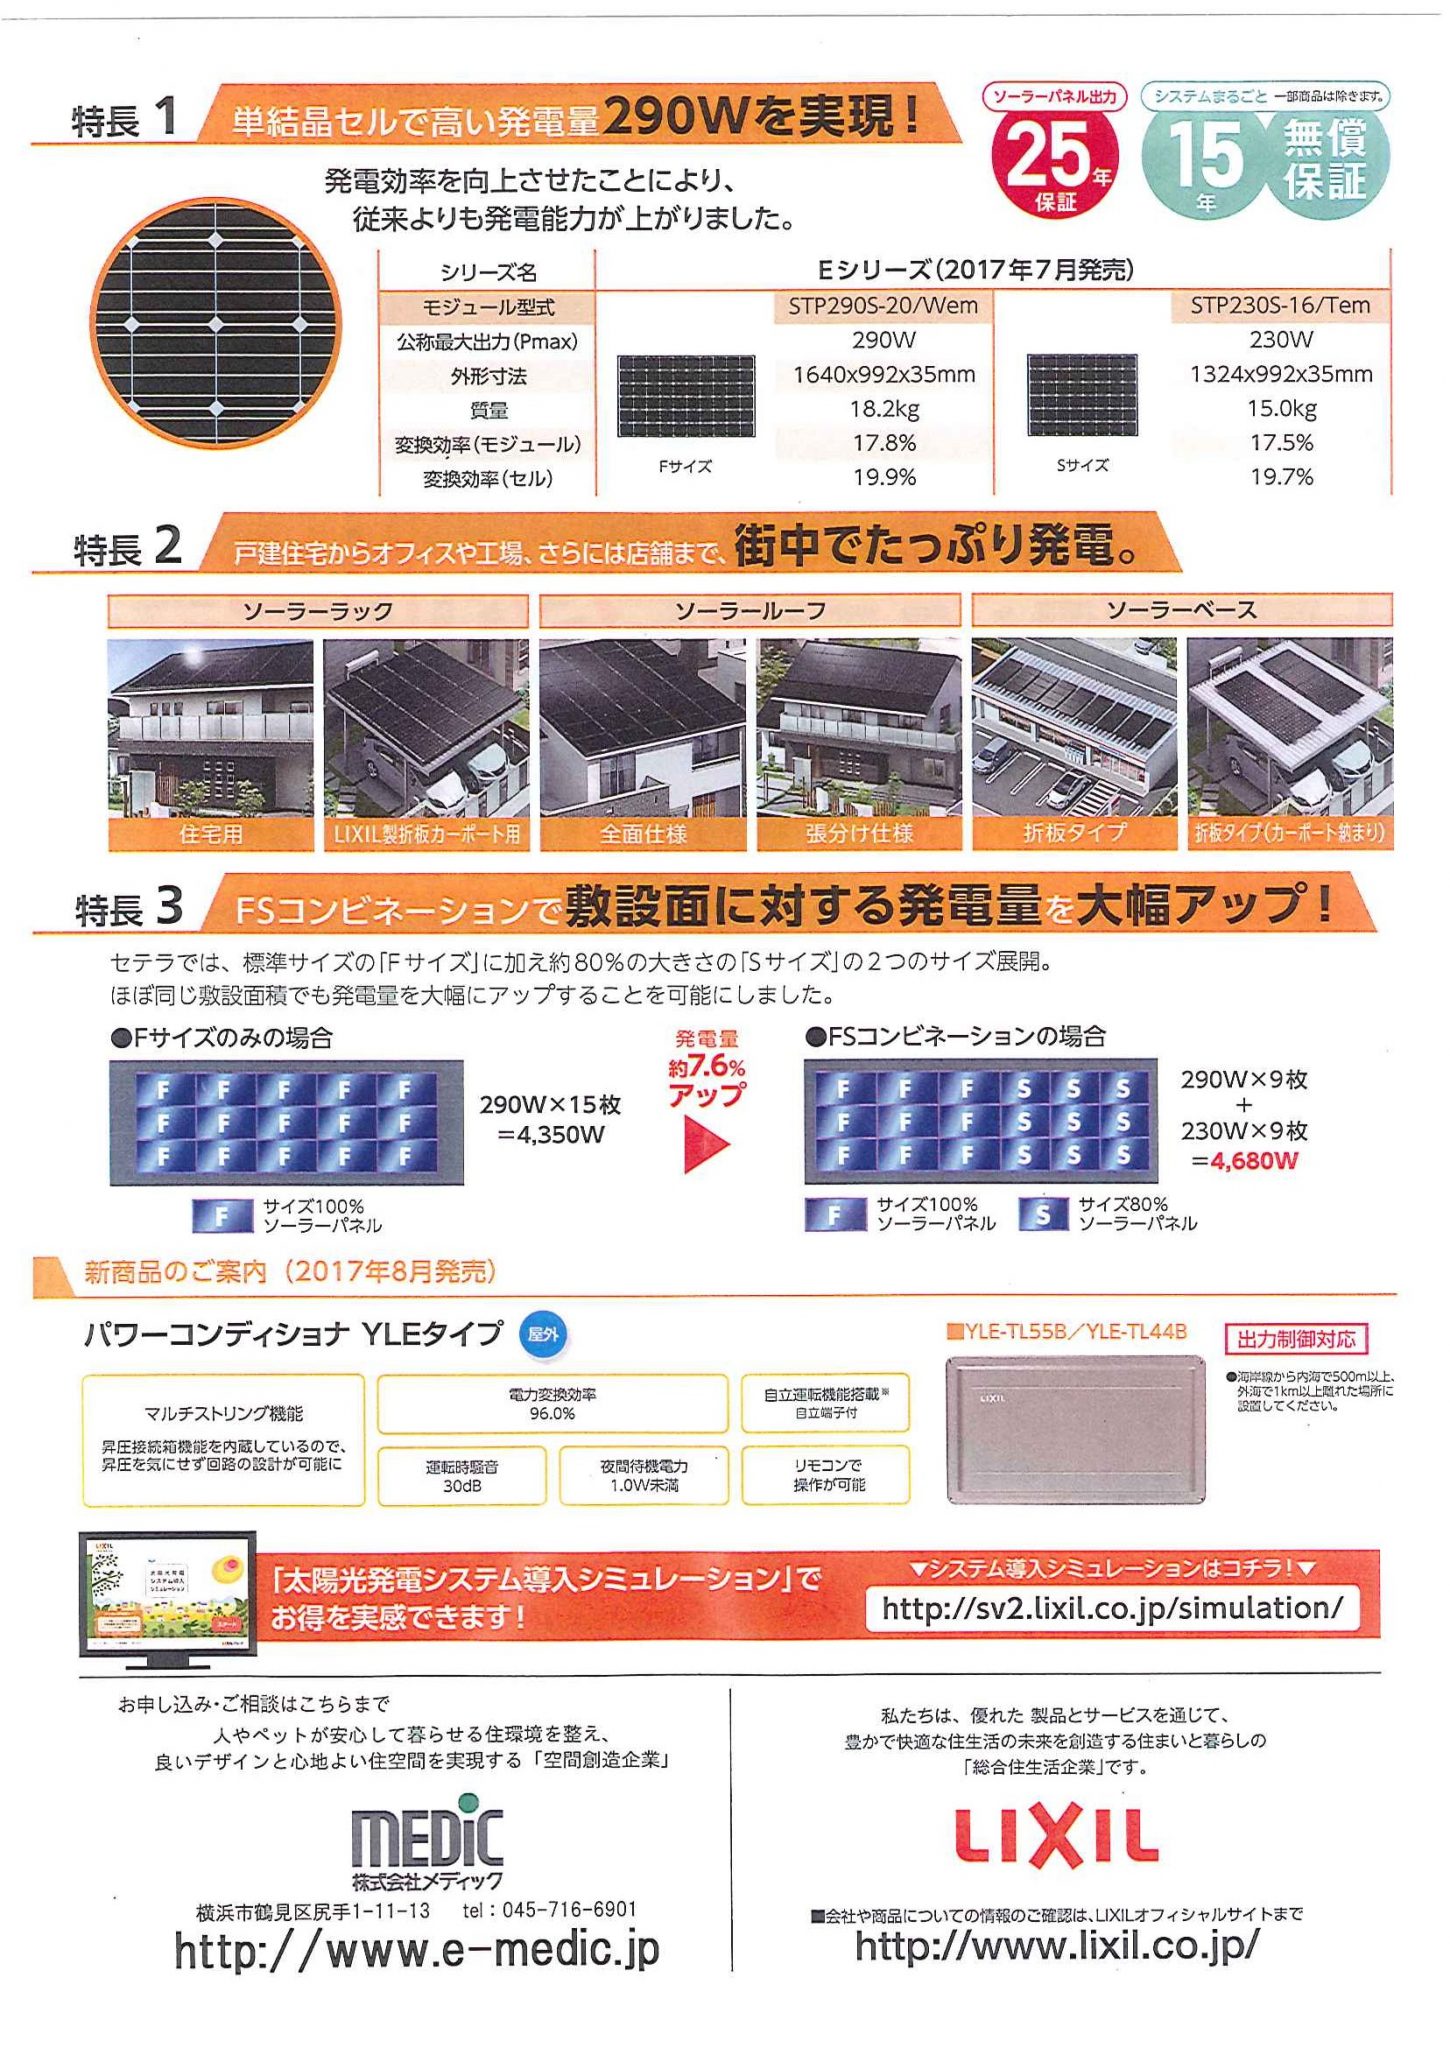 ゼロエミッション住宅の勧め 高効率太陽光パネル Lixil Eシリーズ 販売 横浜 湘南で建築ならメディックへ